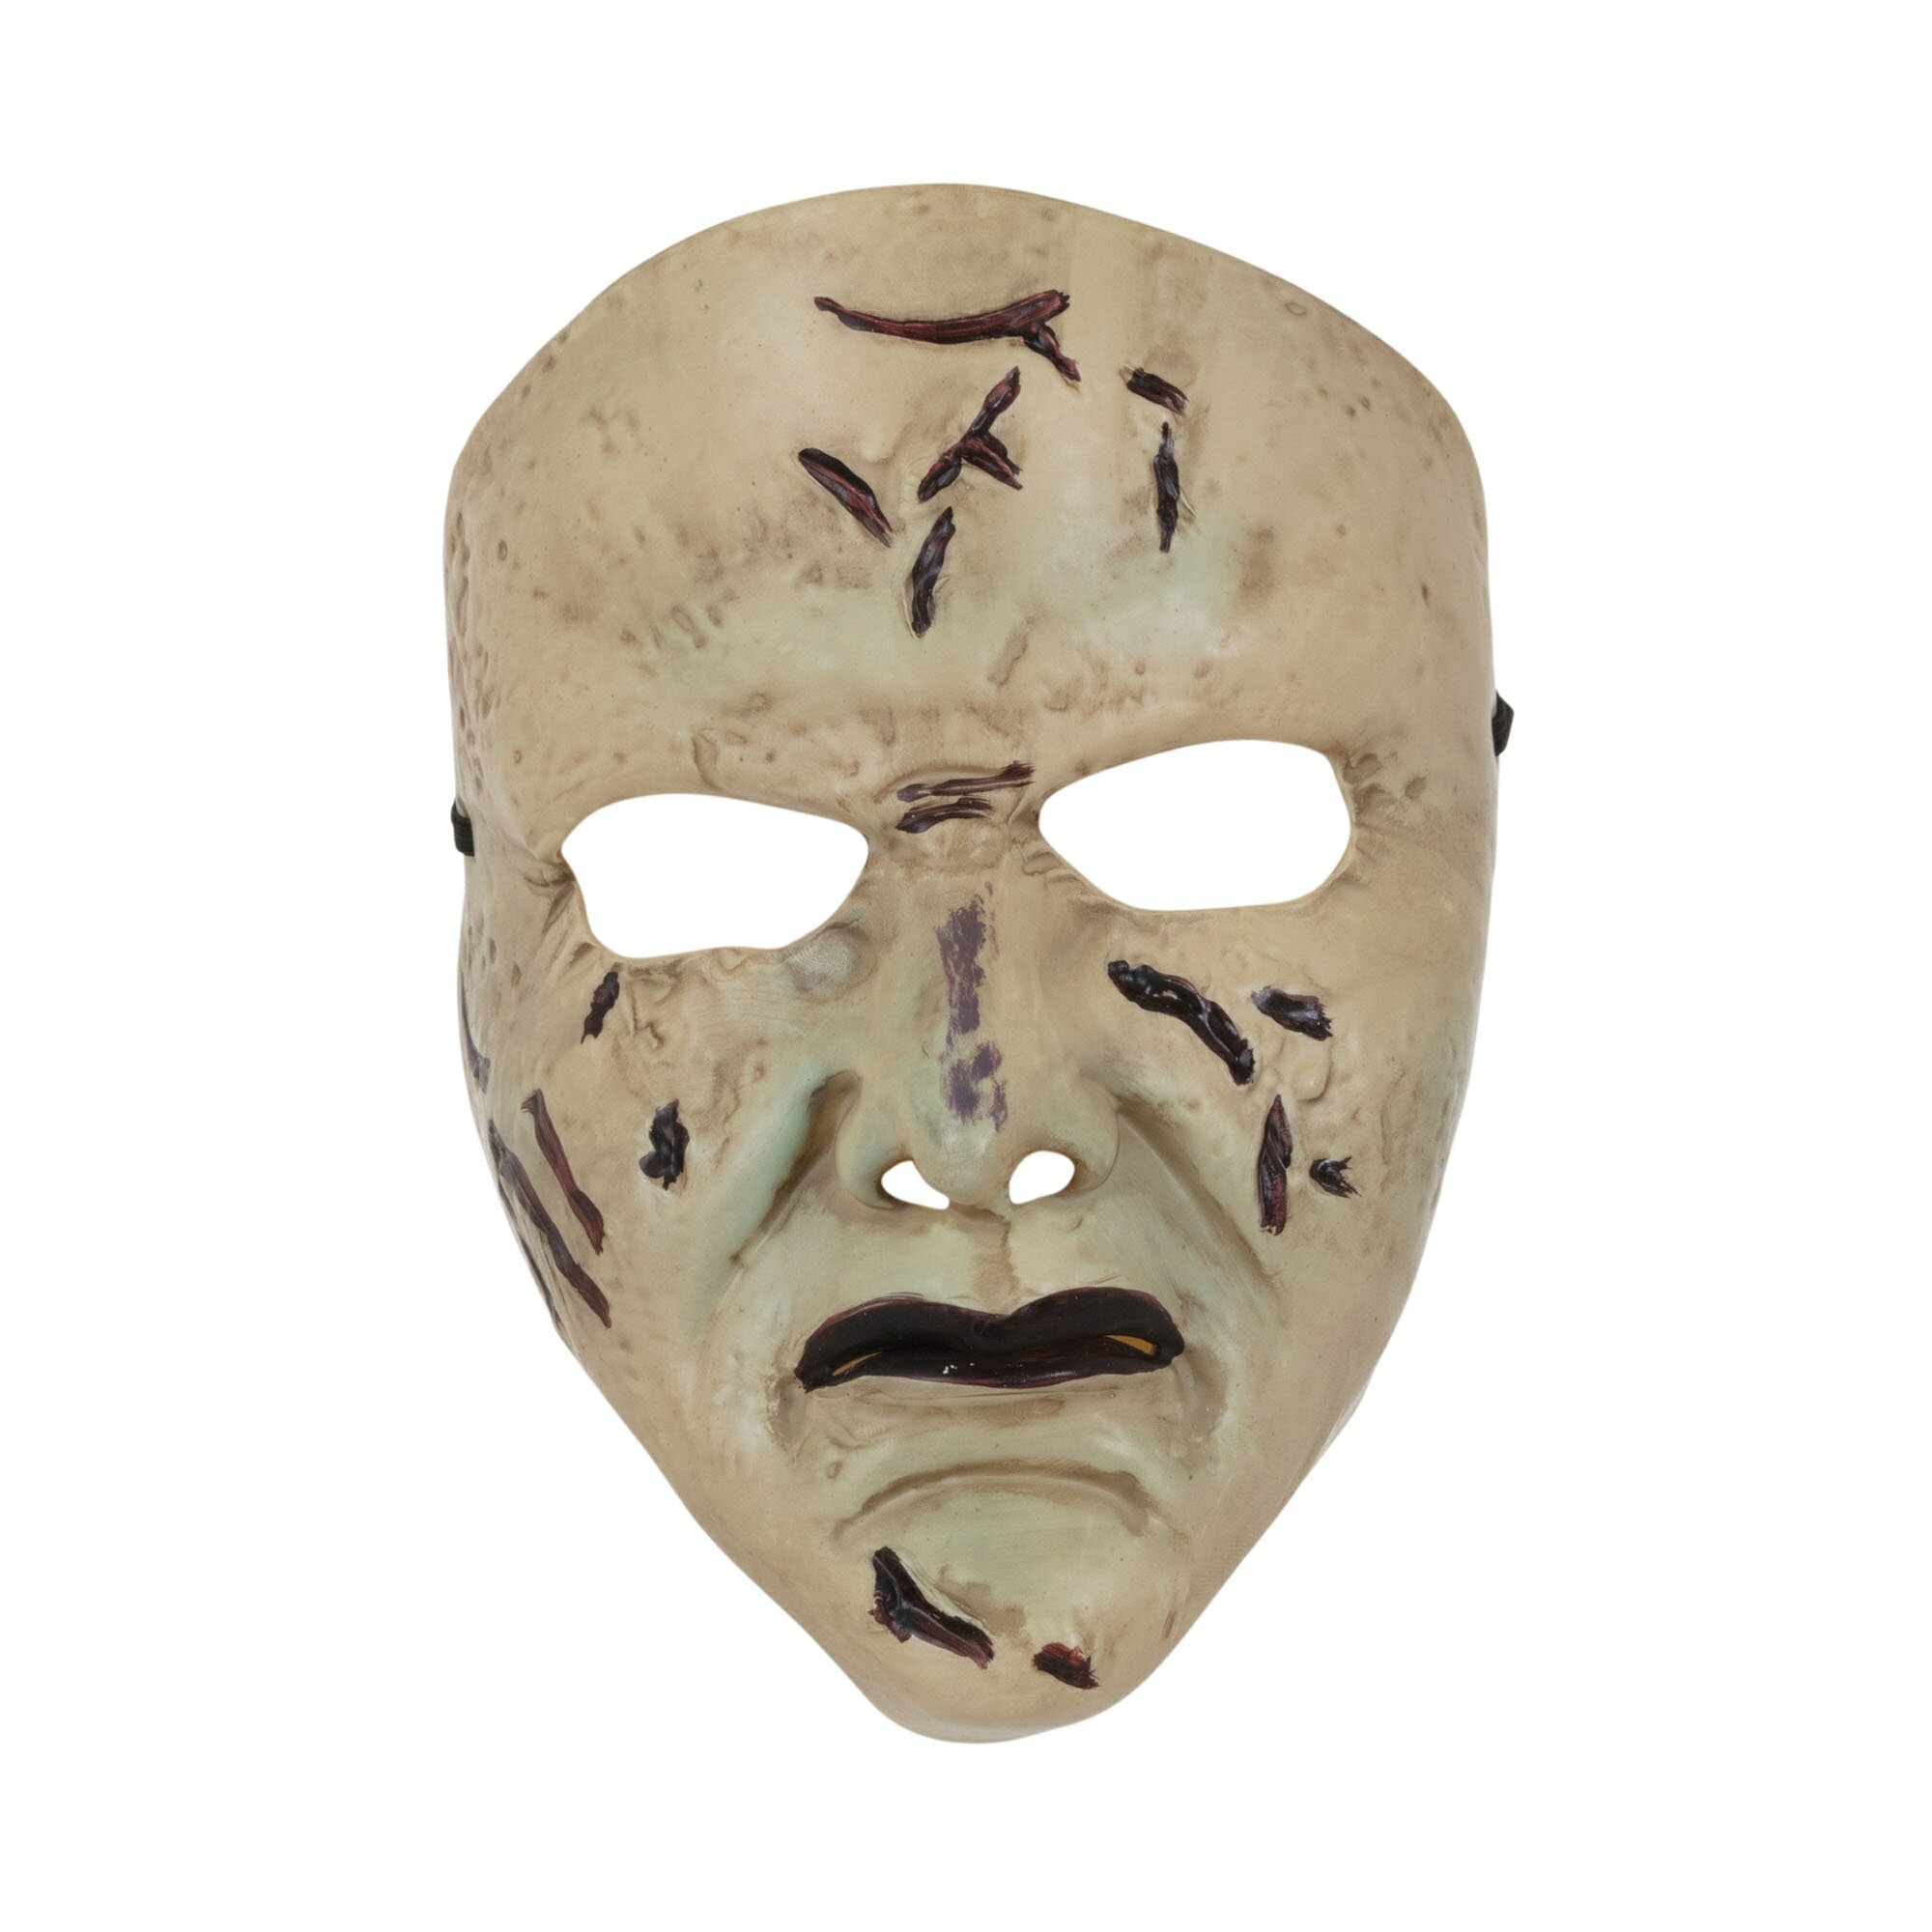 (ブリストル・ノベルティー) Bristol Novelty ハロウィン コスプレ・仮装用 フェイスマスク お面 男女共用 ホラーお化け屋敷 【海外通販】